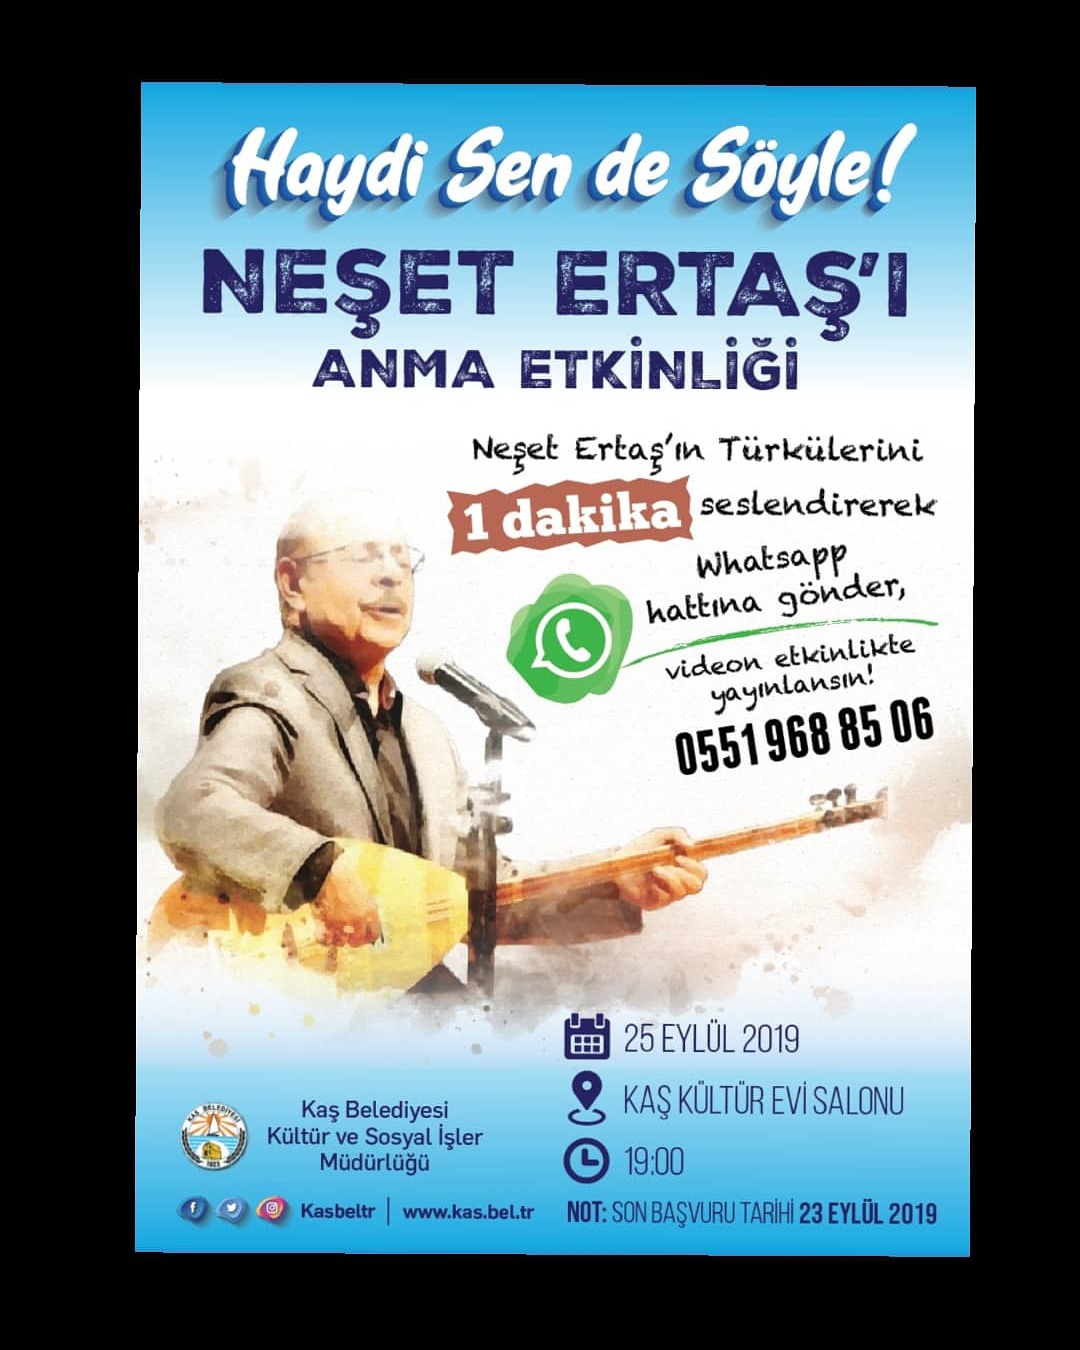 NEŞAT ERTAŞ'I ANMA ETKİNLİĞİ - HAYDİ SEN DE SÖYLE !